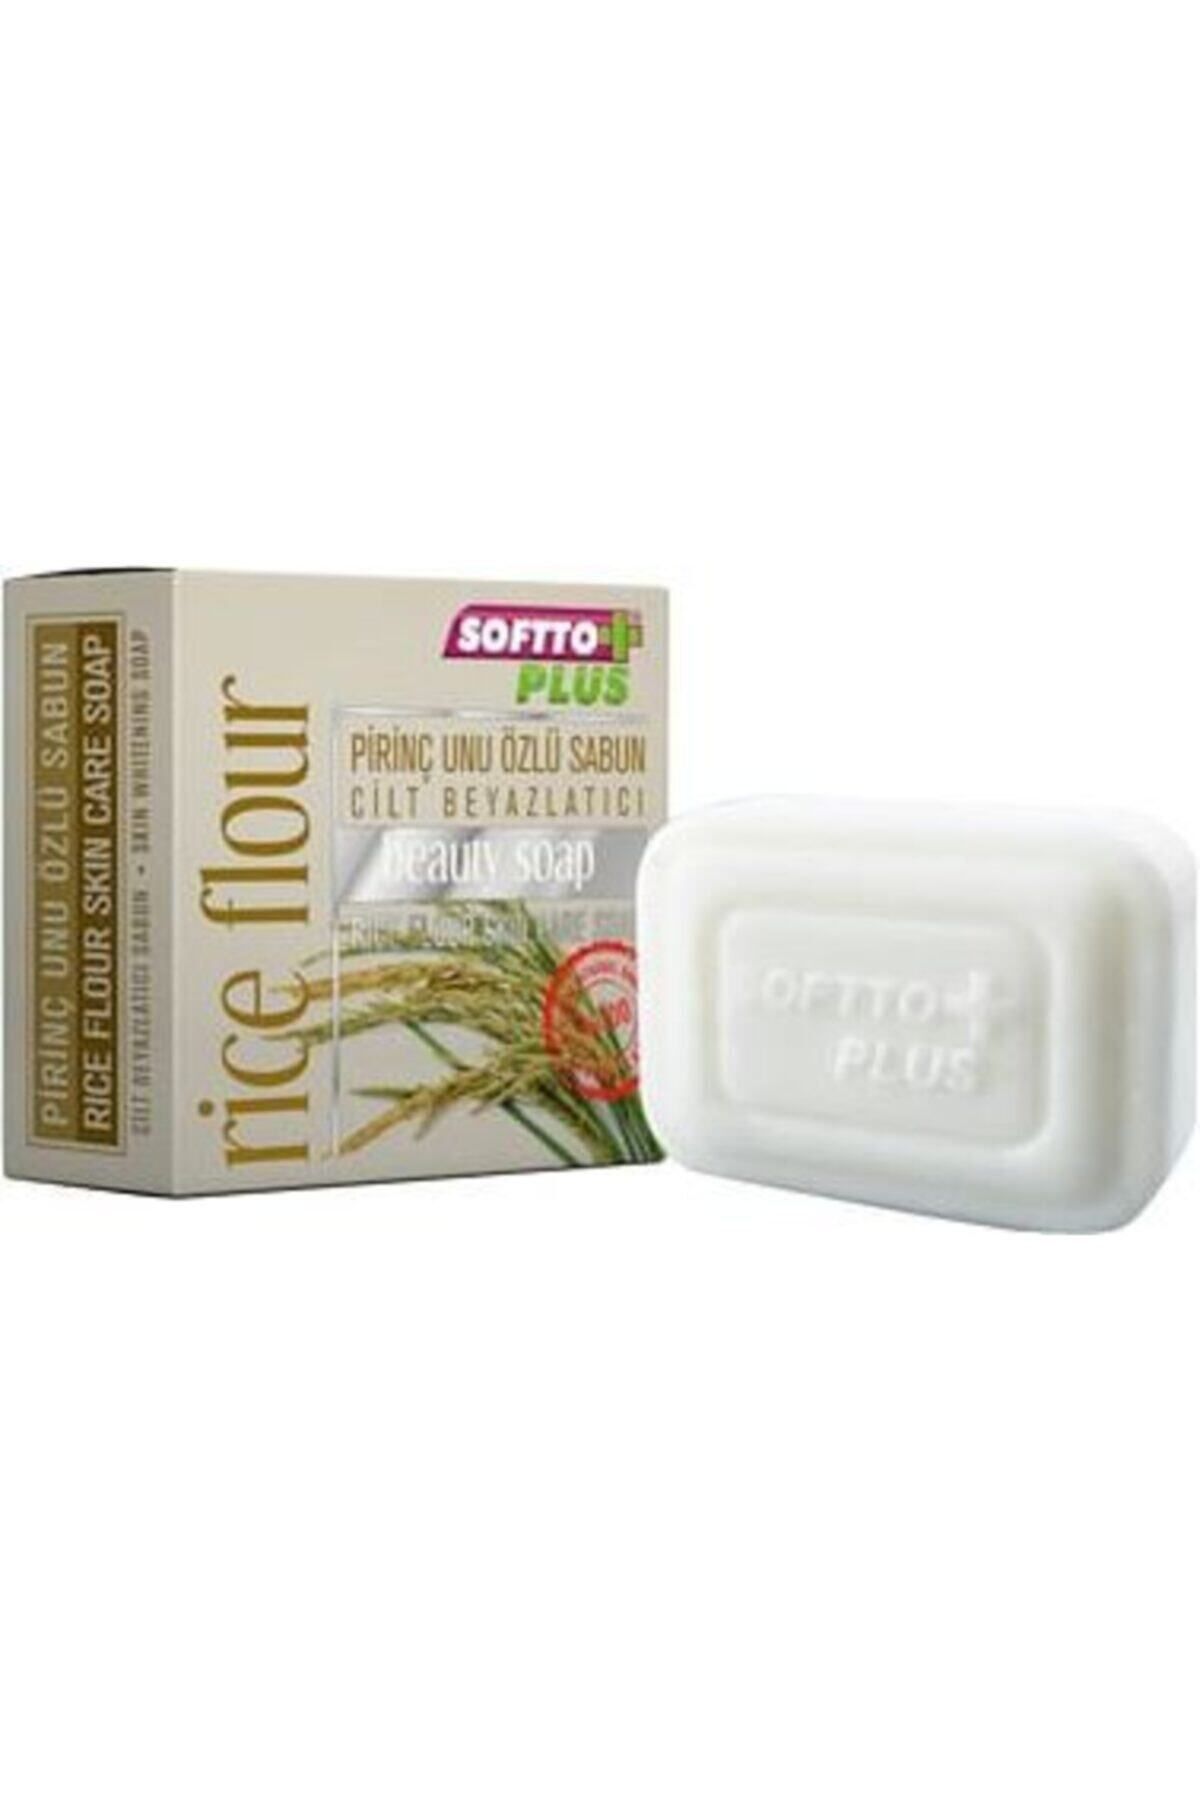 Softo Plus Cilt Beyazlatıcı Pirinç Unu Özlü Sabun